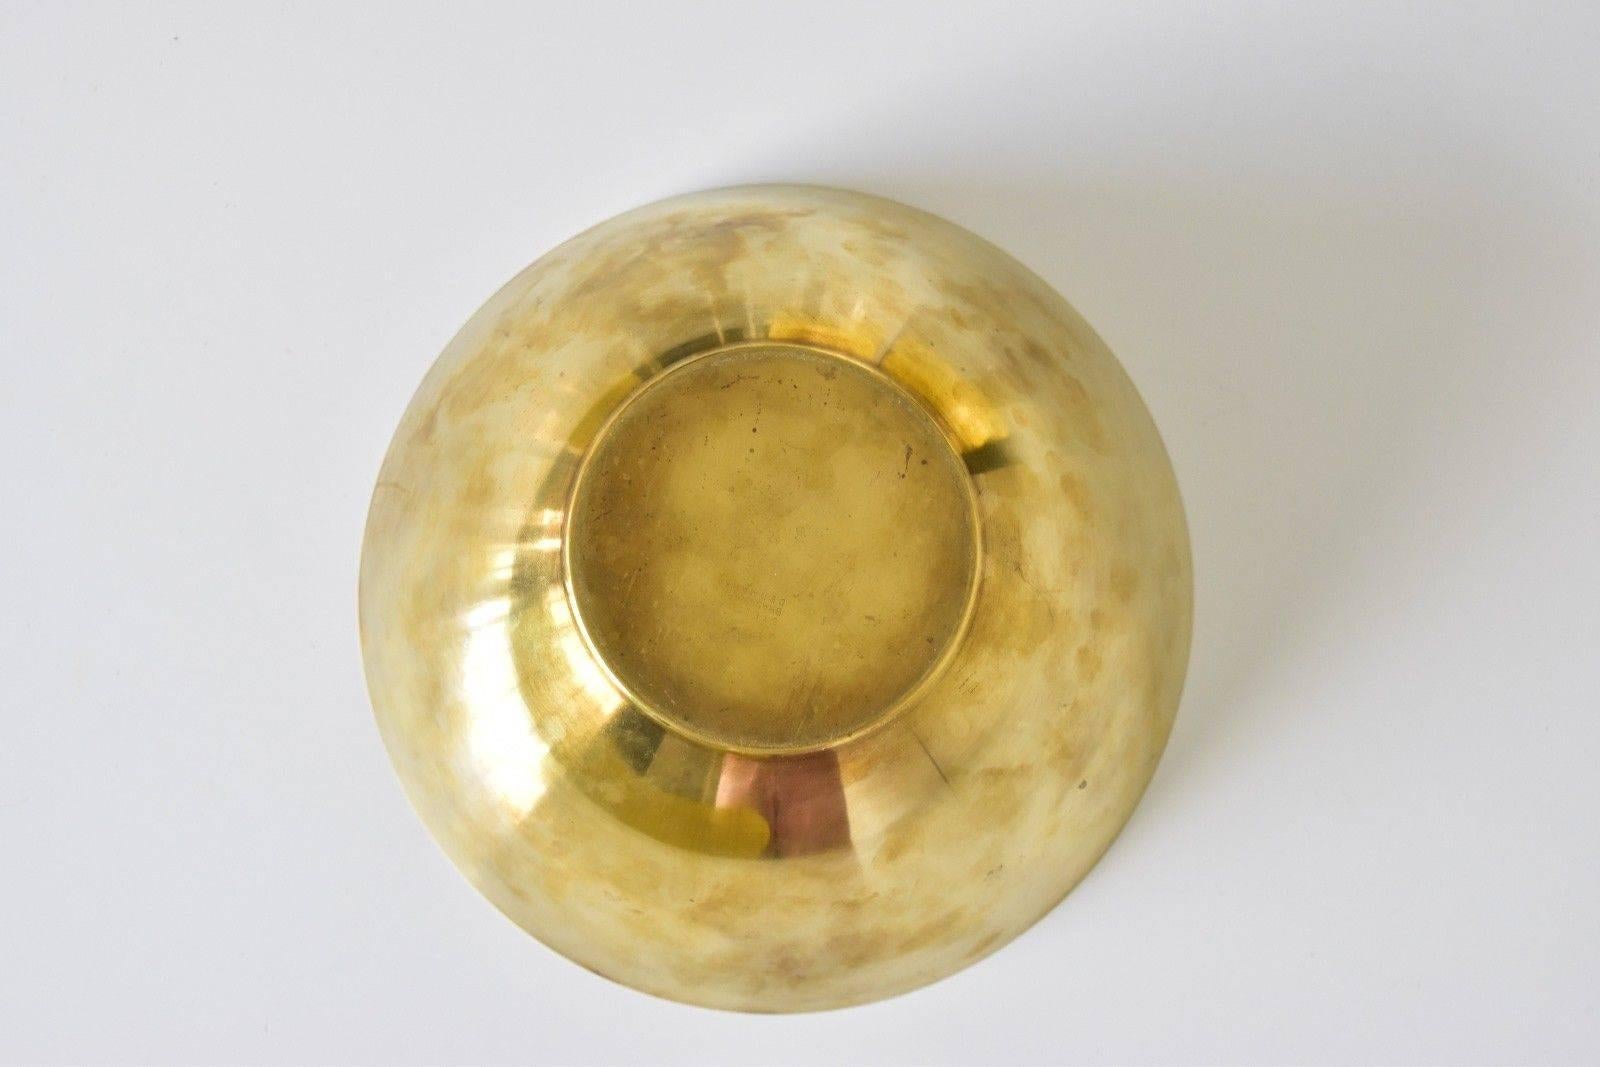 Danish Arne Jacobsen Brass Line Bowl by Stelton Made in Denmark